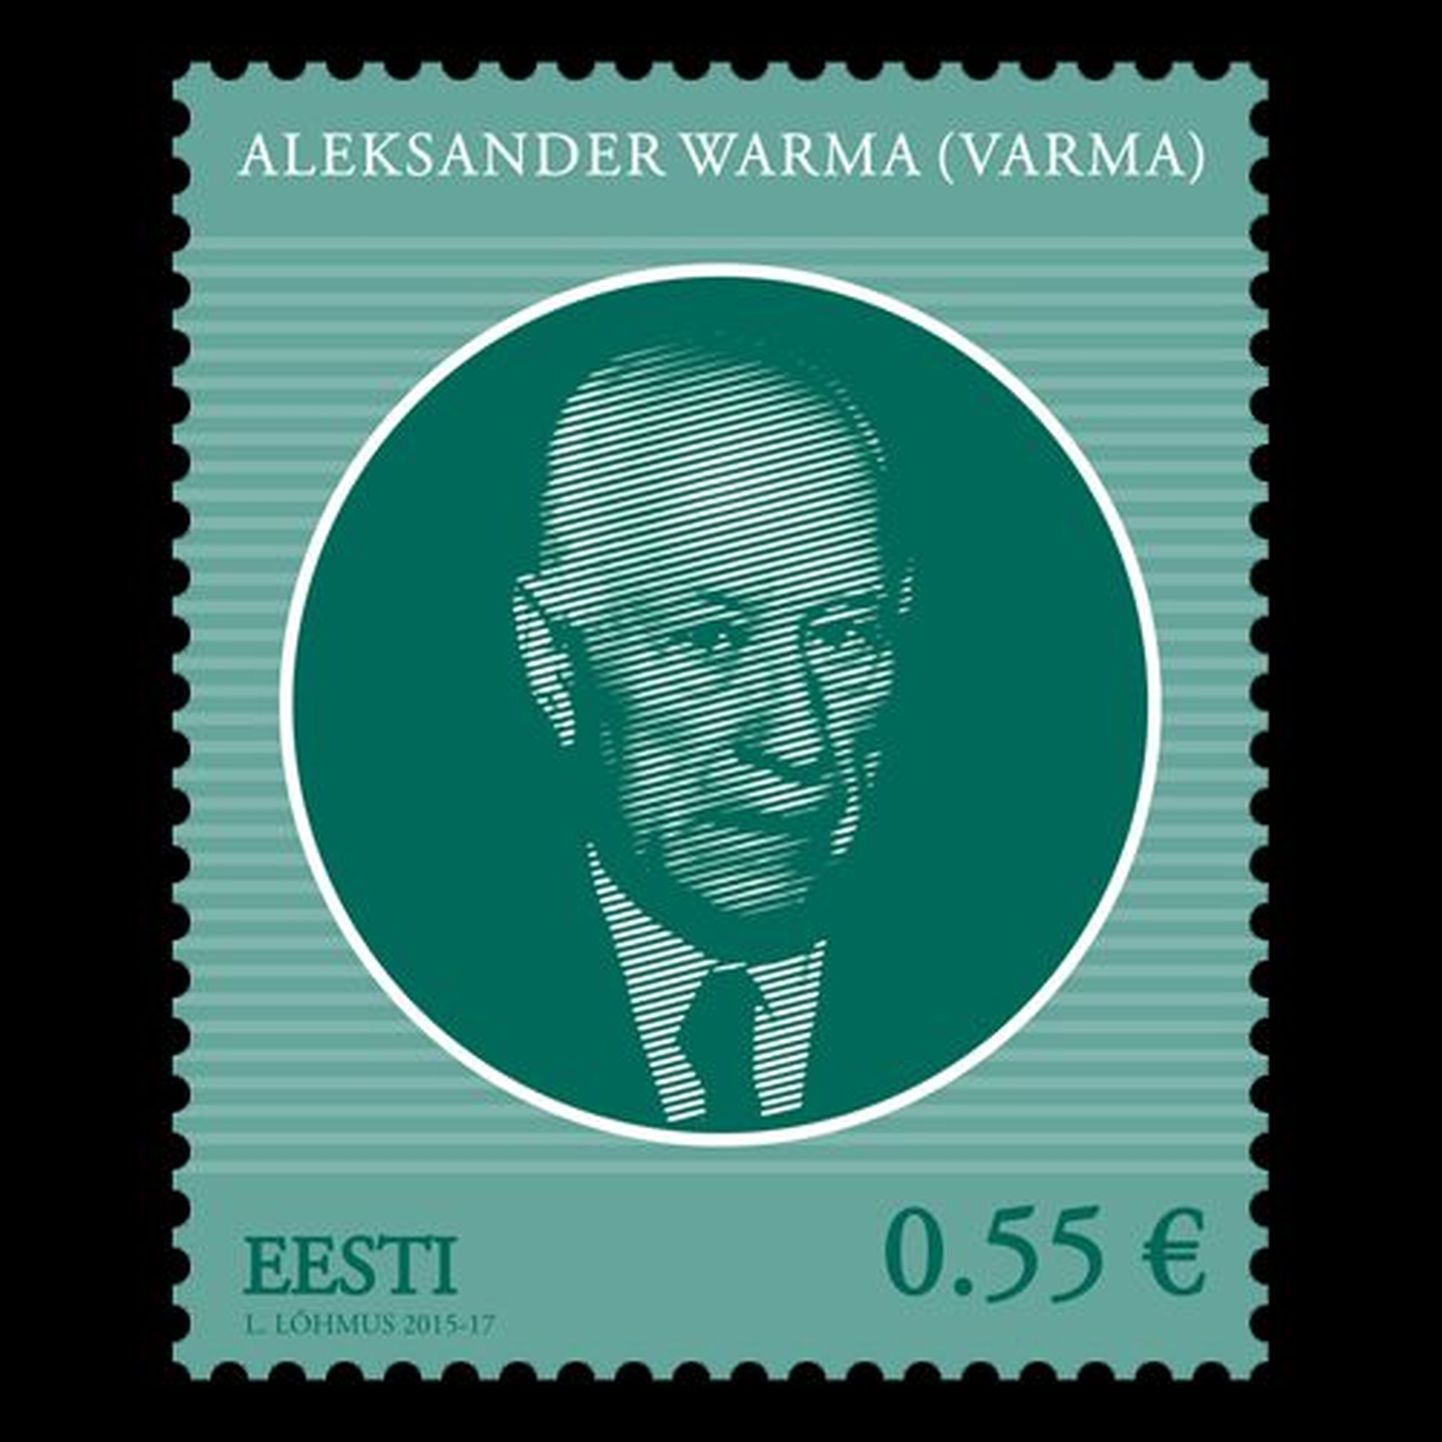 Aleksander Warmale pühendatud postmark